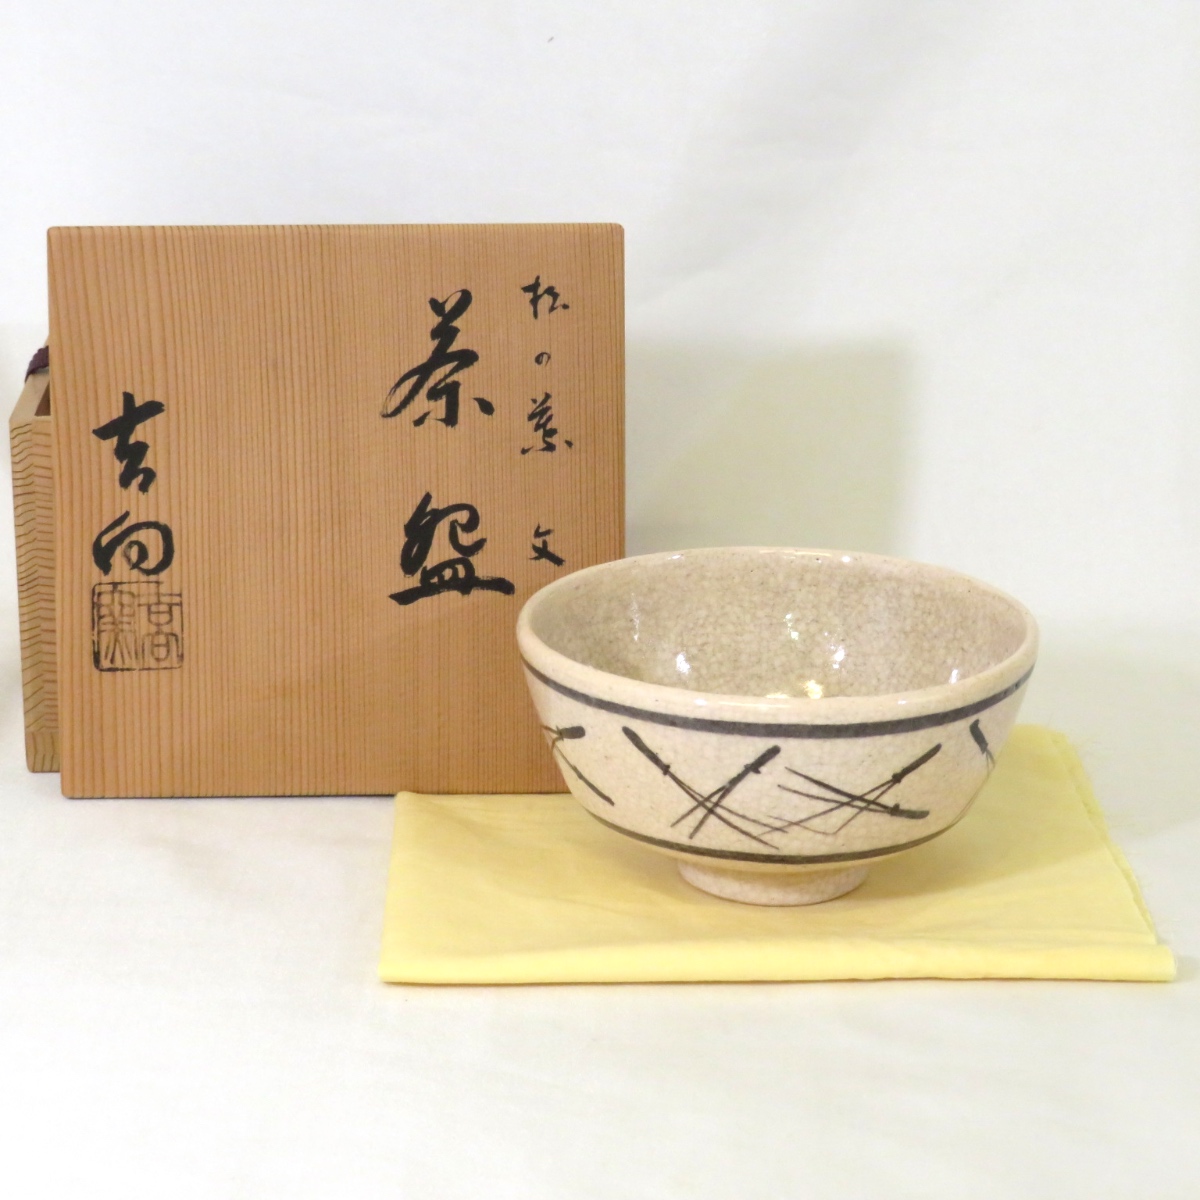 【楽天市場】(五月の特売品) 吉向窯 吉向松月作 松の葉文 茶碗 茶道具 